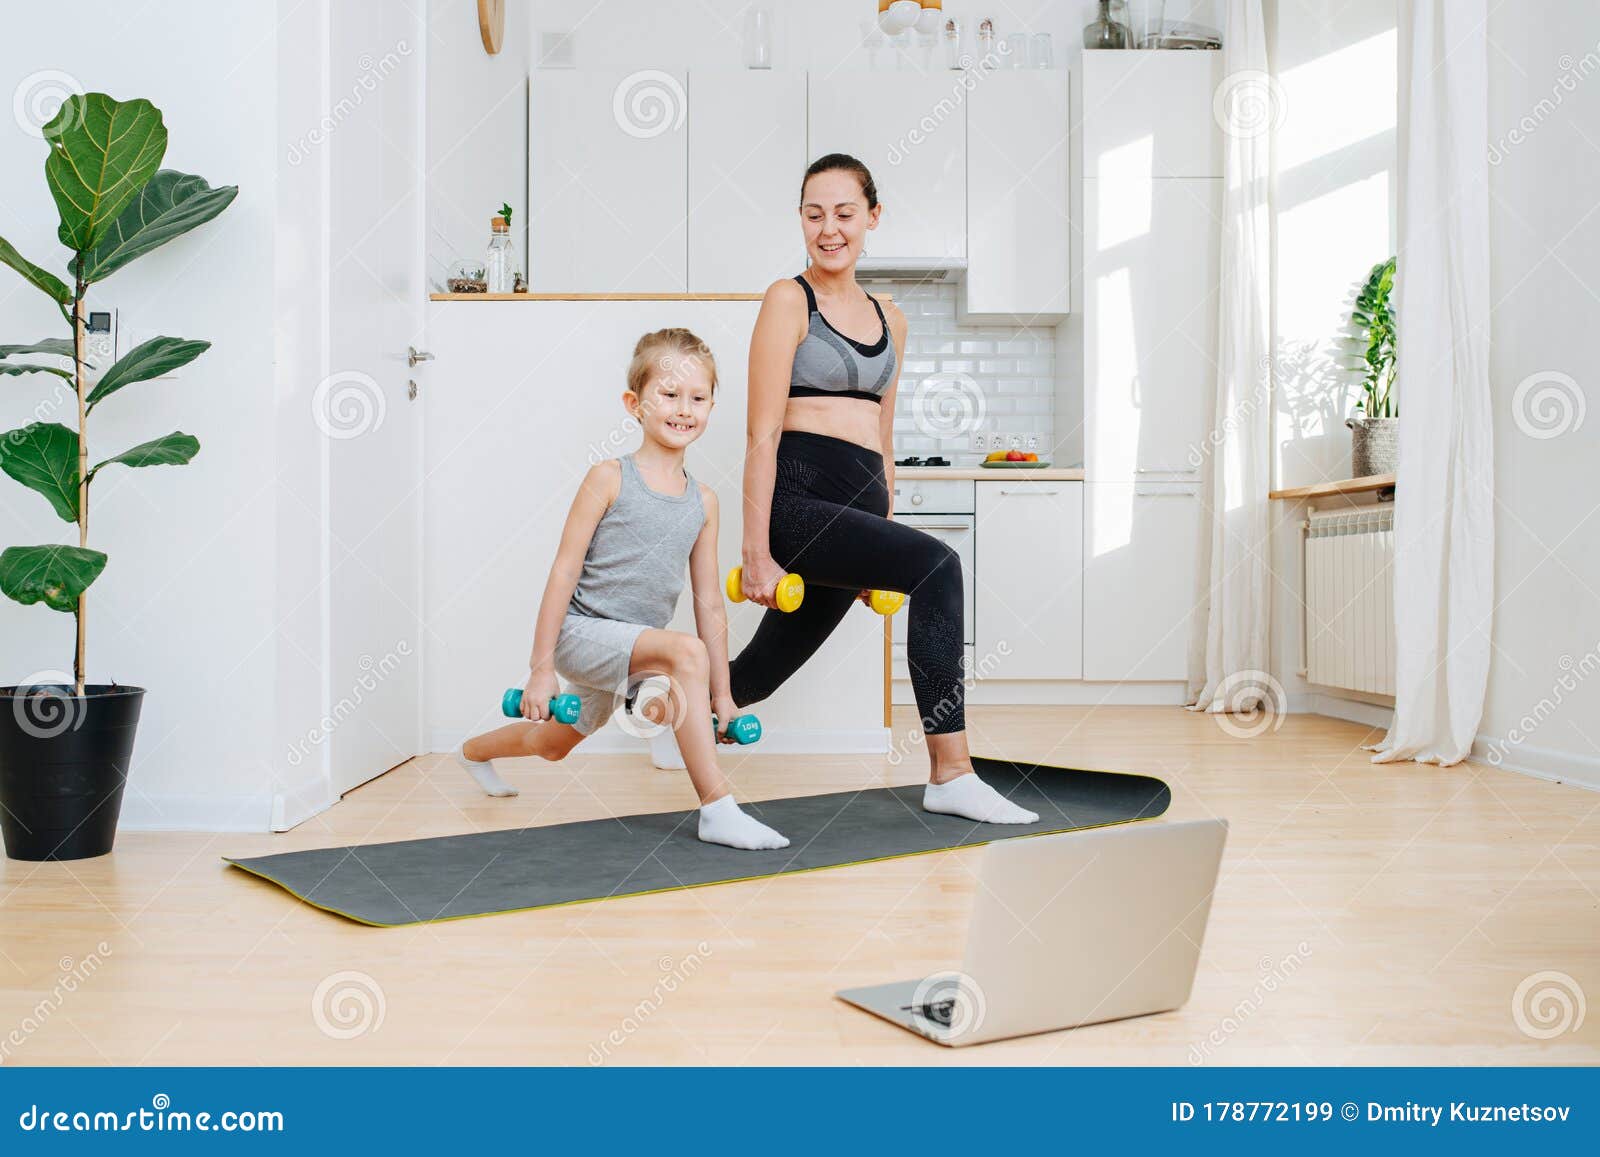 Спорт семьи дома смотреть онлайн обучение на компьютере Стоковое Изображение